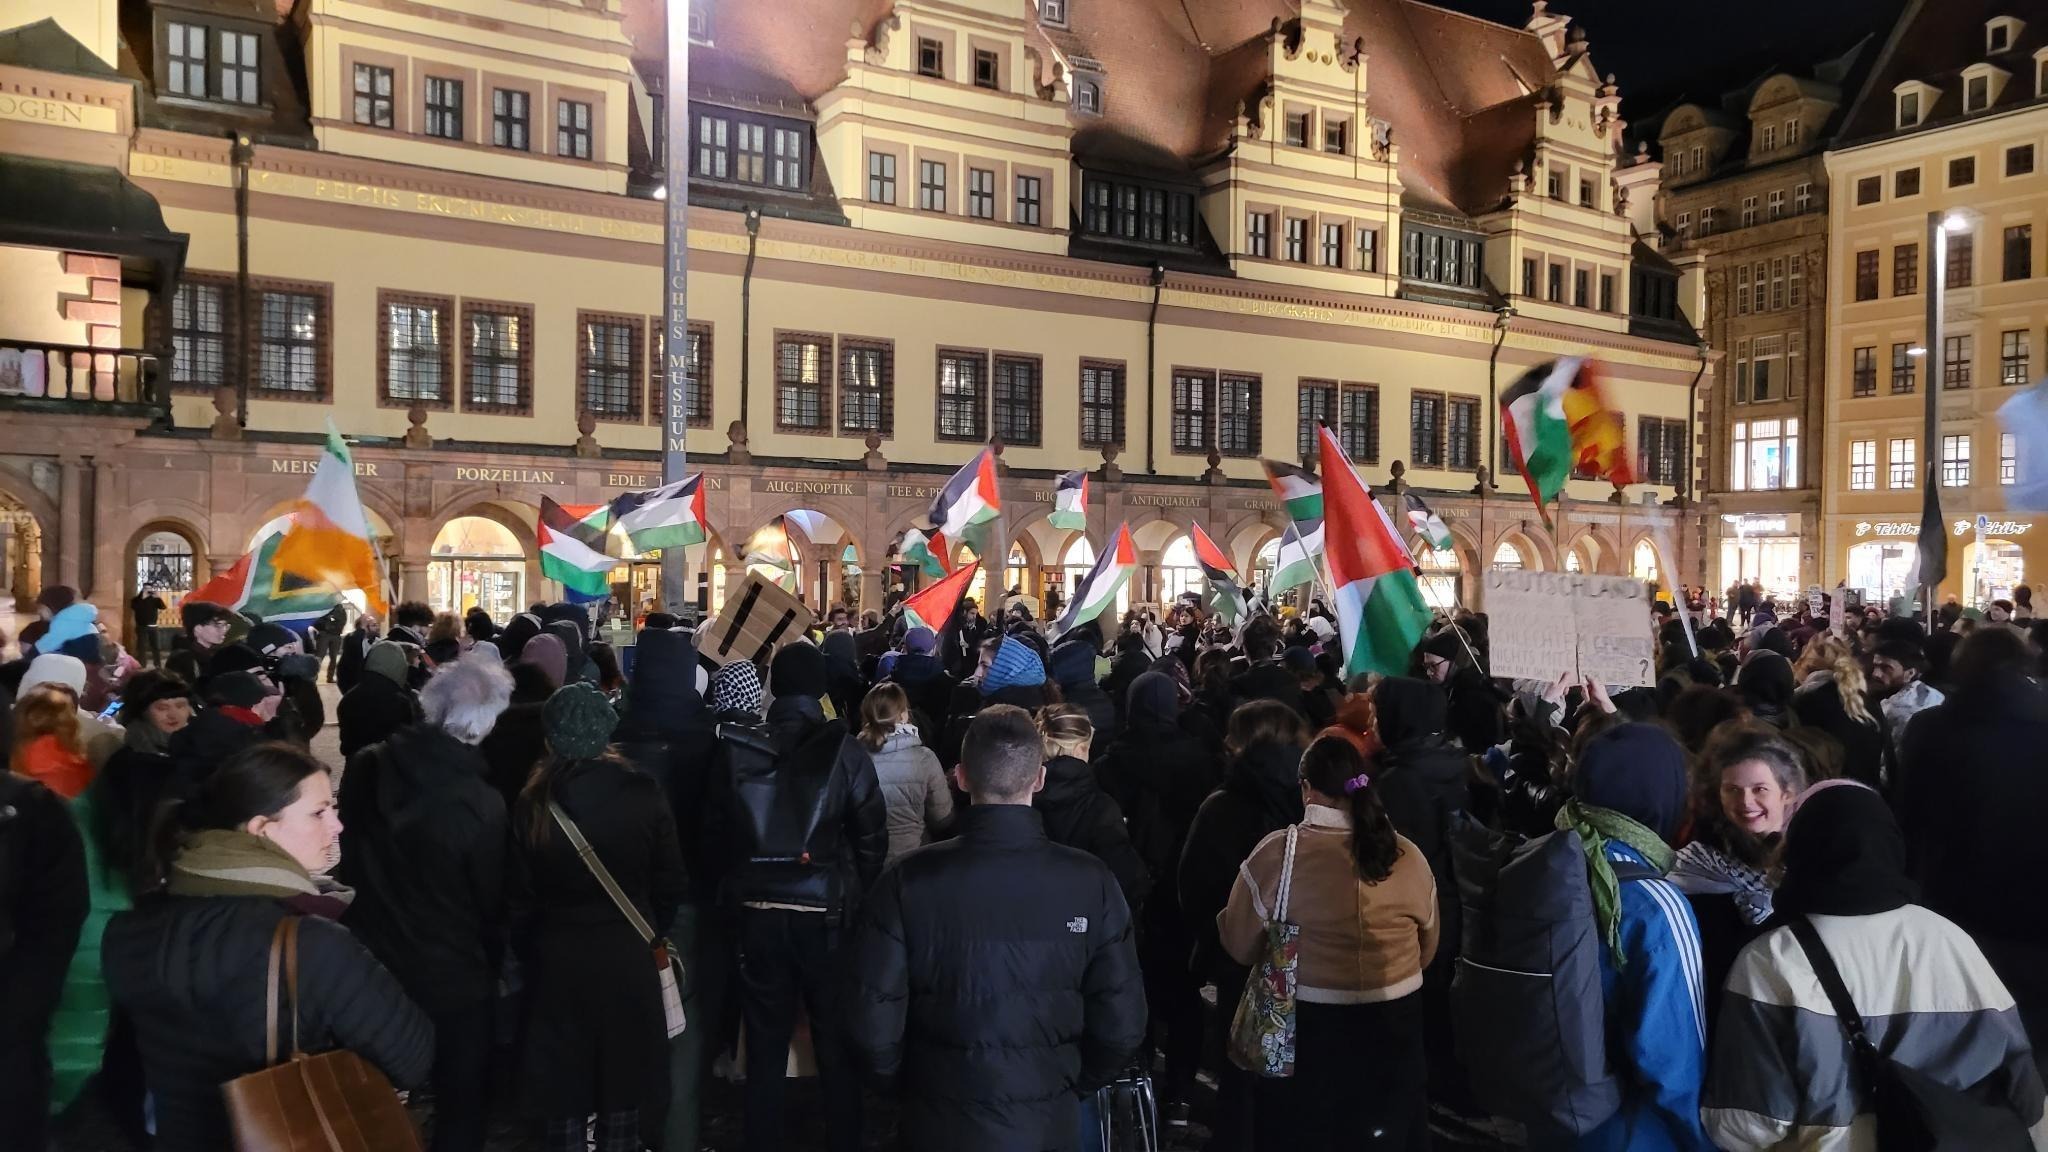   »Ich werde nach wie vor von solchen Demonstrationen berichten« | Journalist nach Pro-Palästina-Kundgebung in Leipzig angegriffen  